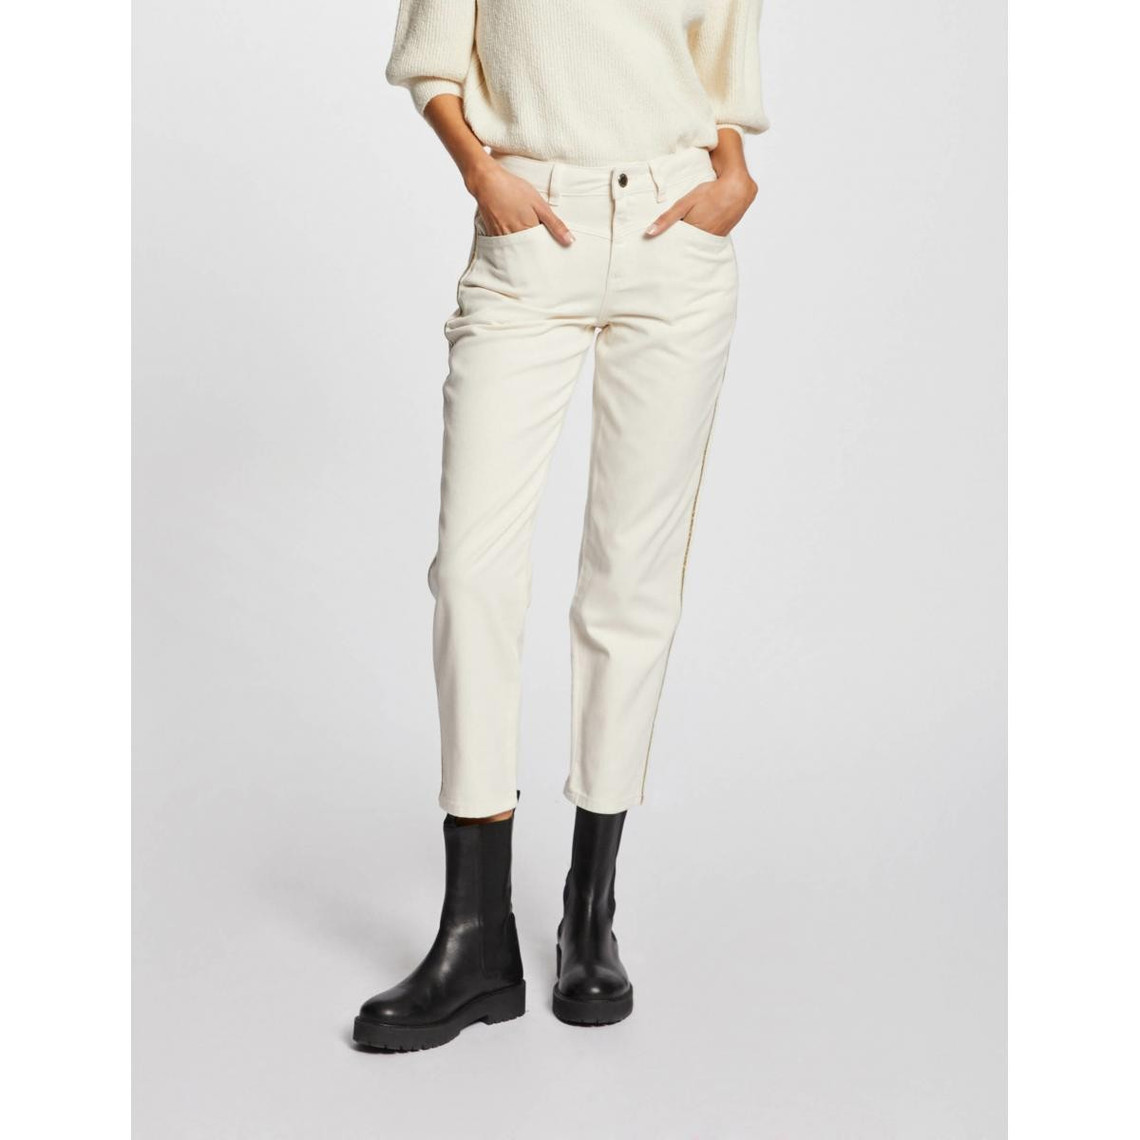 pantalon droit à bandes métallisées blanc en coton